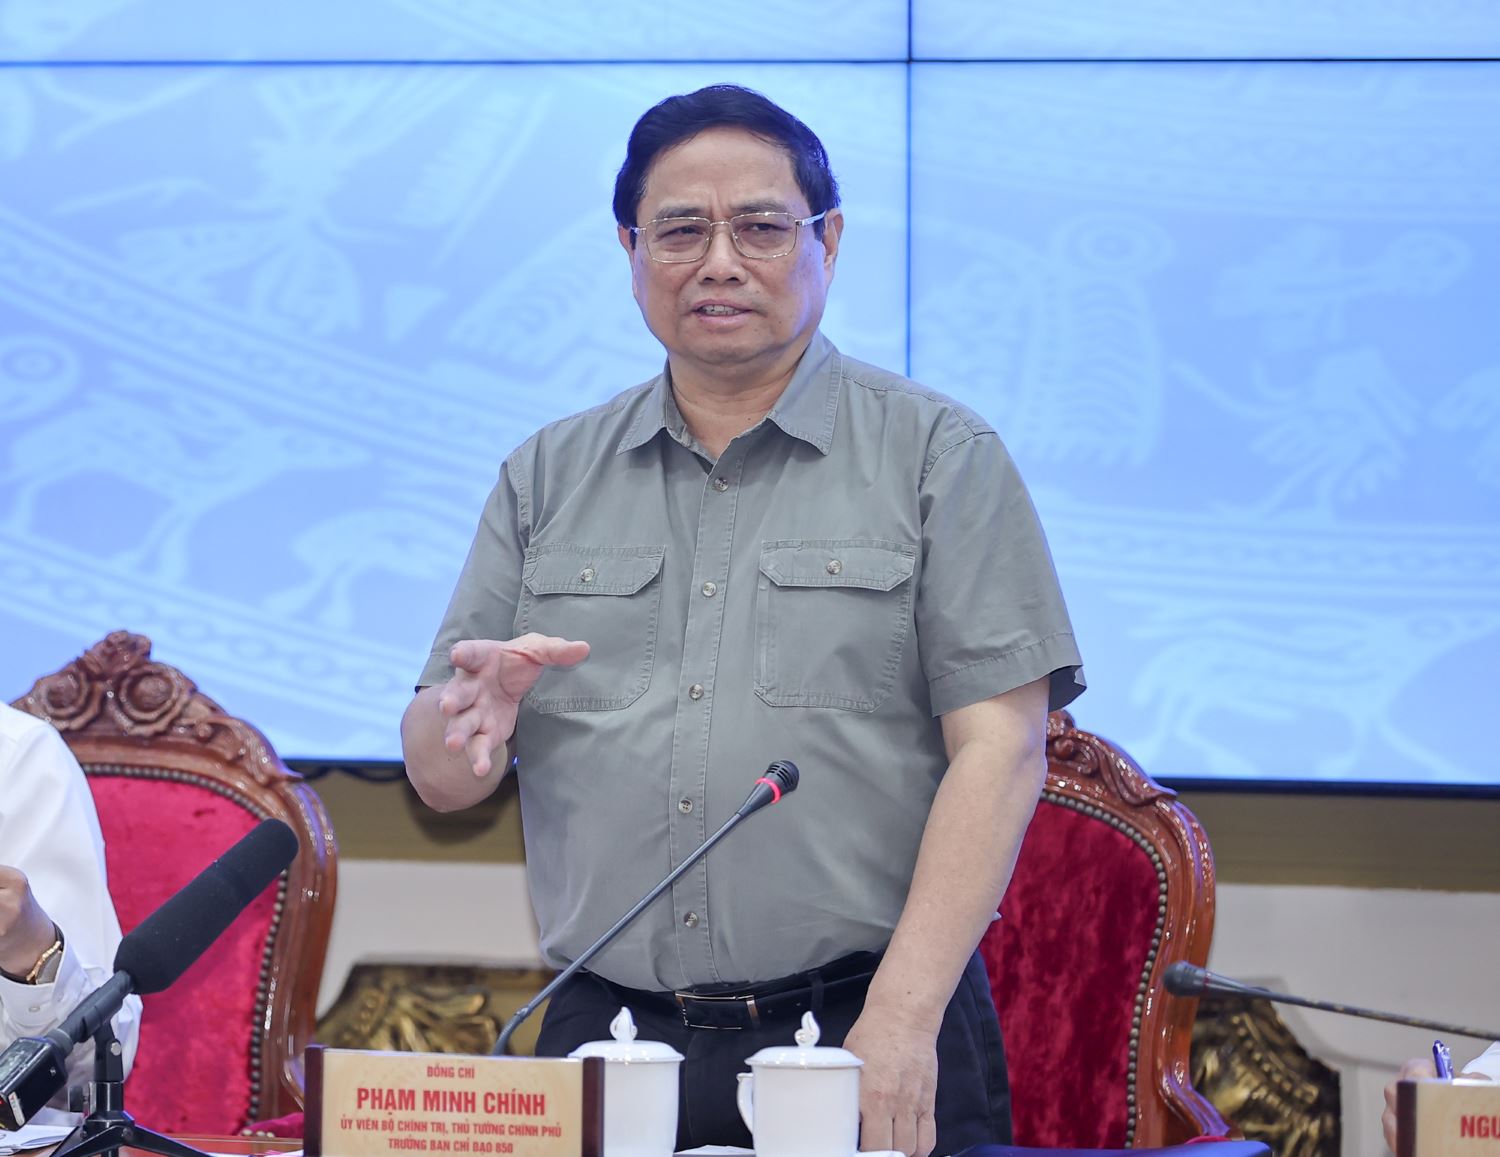 Thủ tướng Phạm Minh Chính chỉ đạo phân cấp tối đa cho TPHCM để triển khai Nghị quyết 98 nhanh hơn. Ảnh: VGP/Nhật Bắc